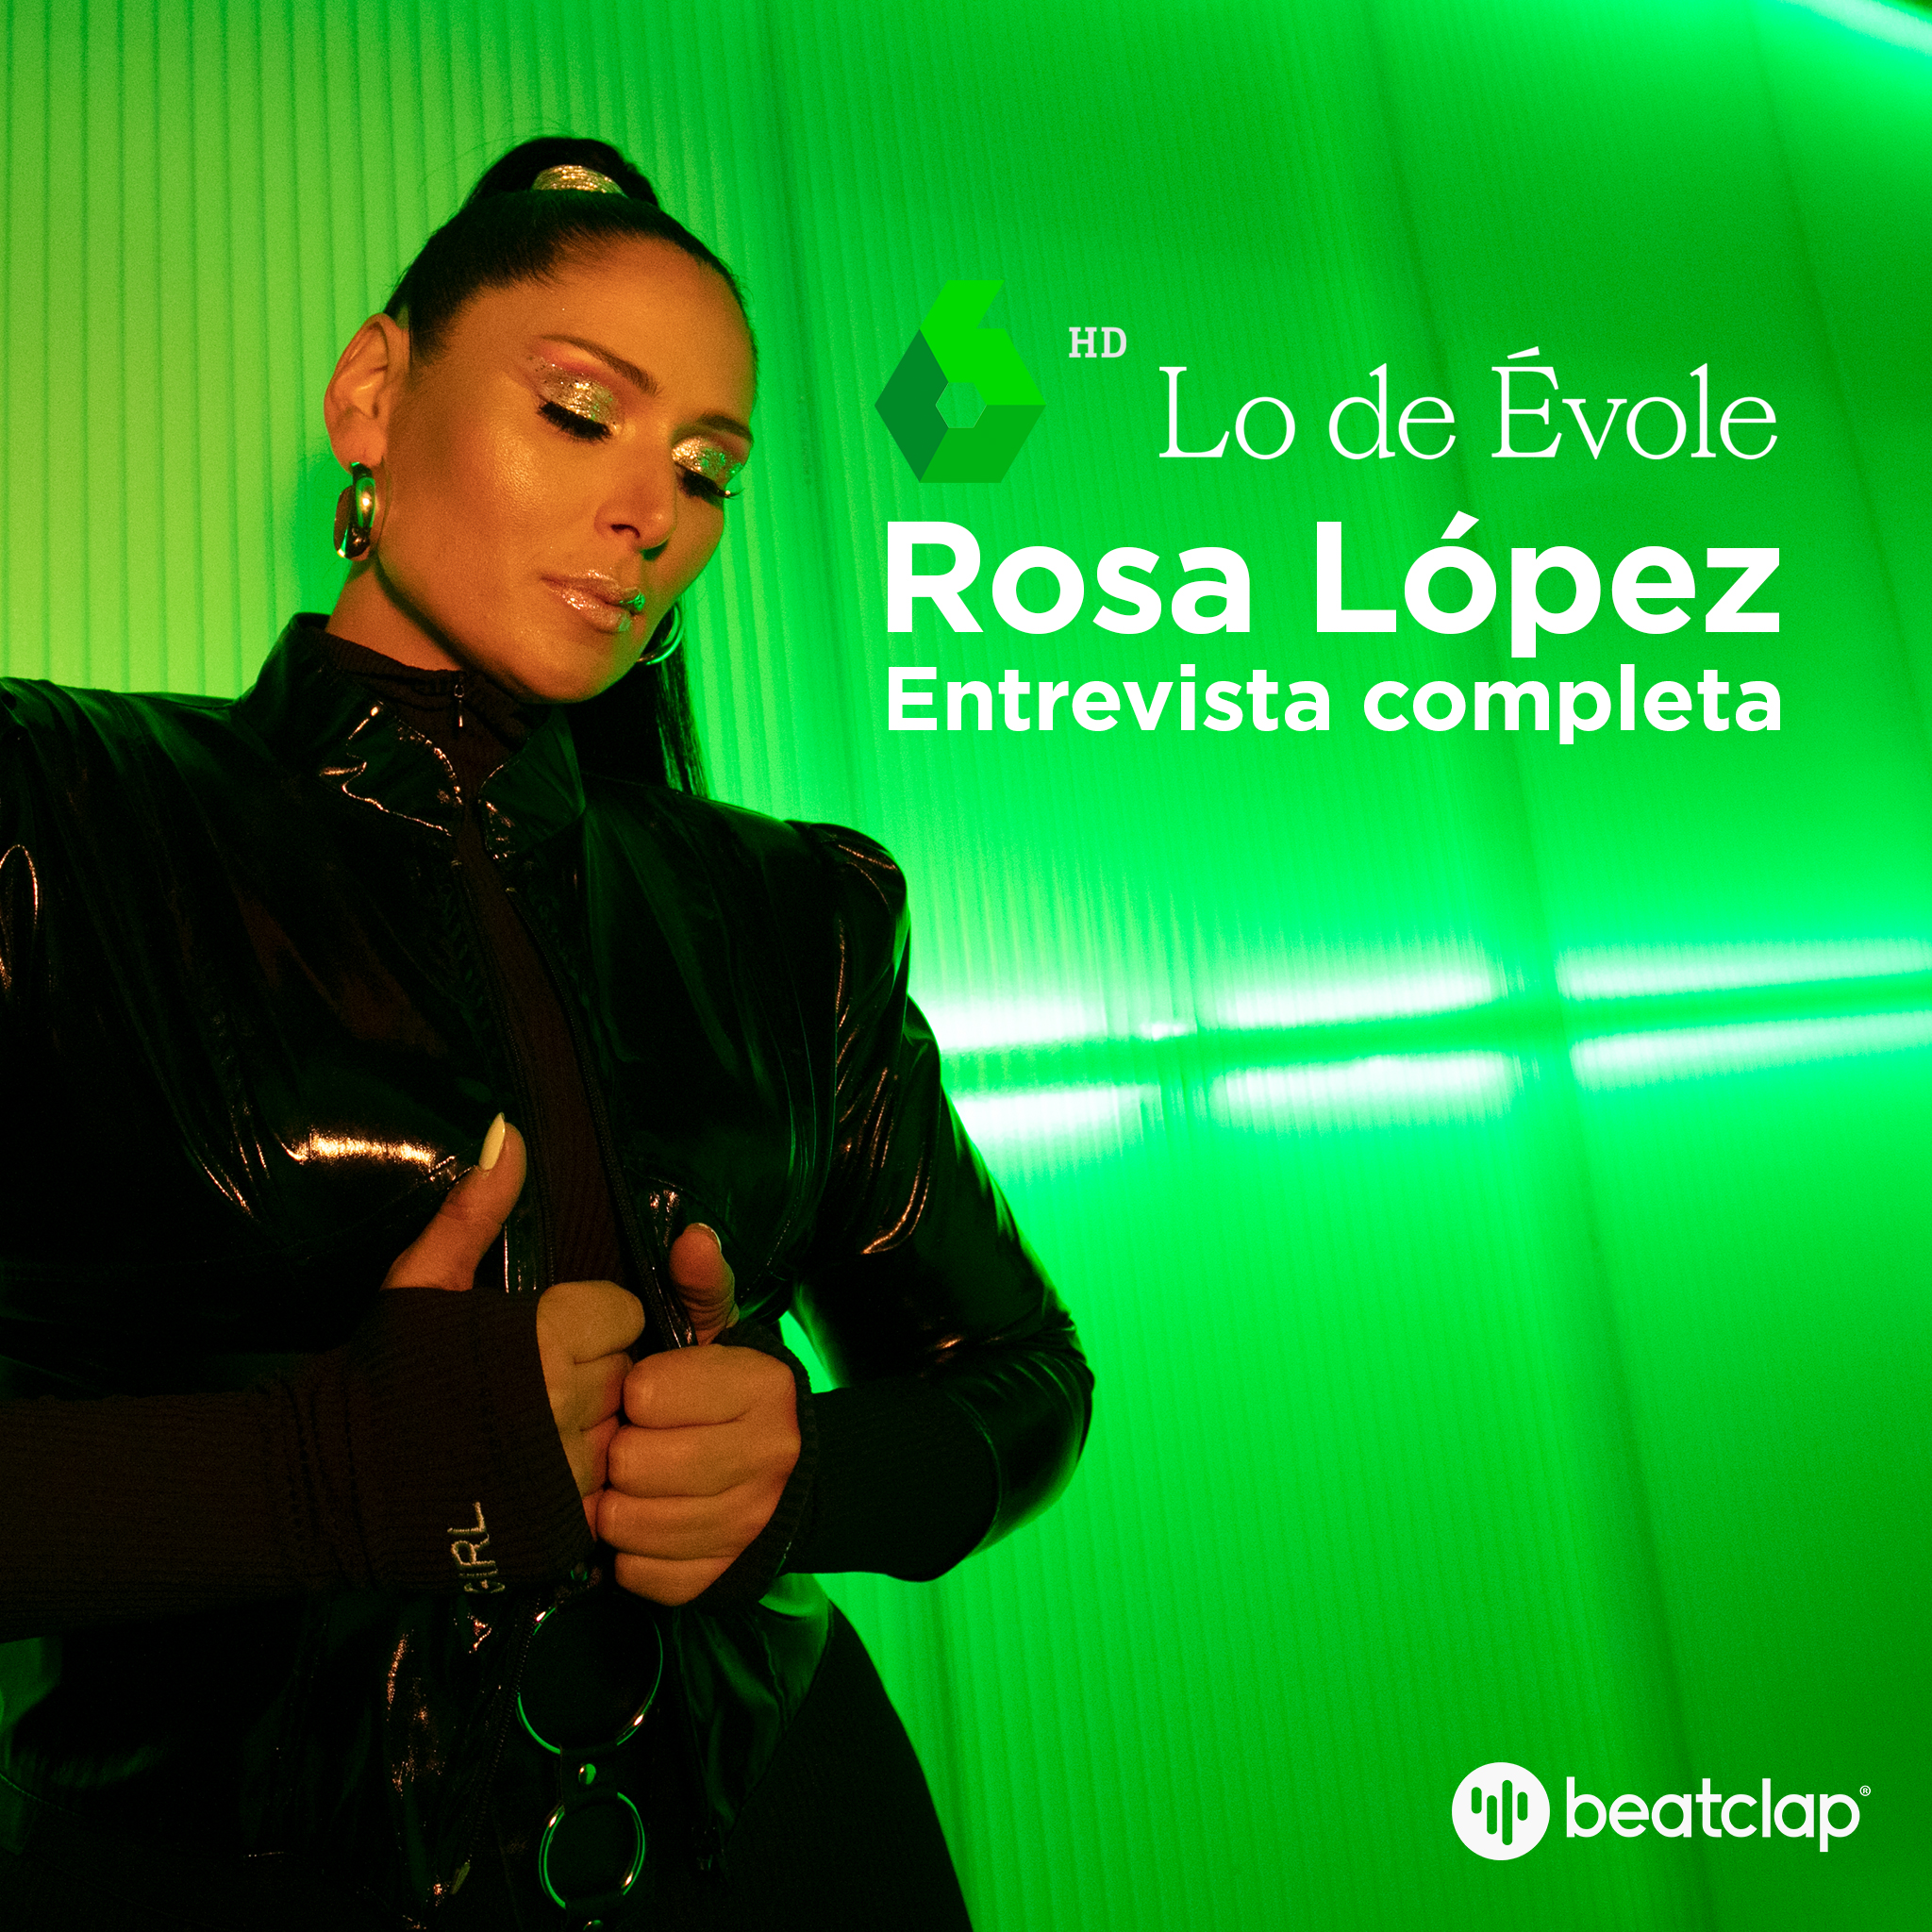 Artistas Beatclap: Rosa Lopez en Lo de Evole